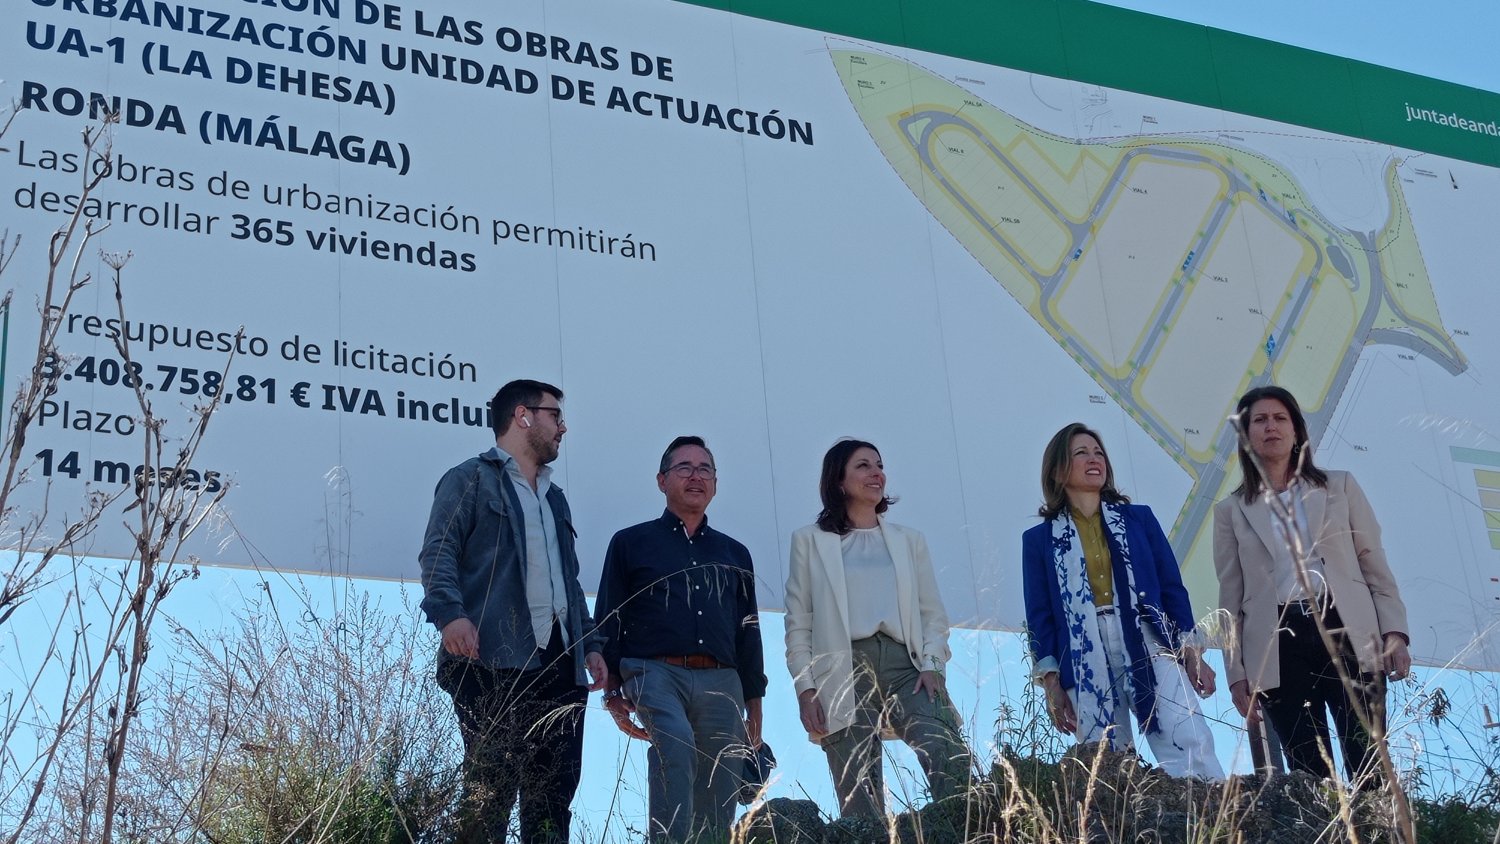 La Junta licitará las obras de urbanización de La Dehesa en Ronda, tras 14 años paralizadas 